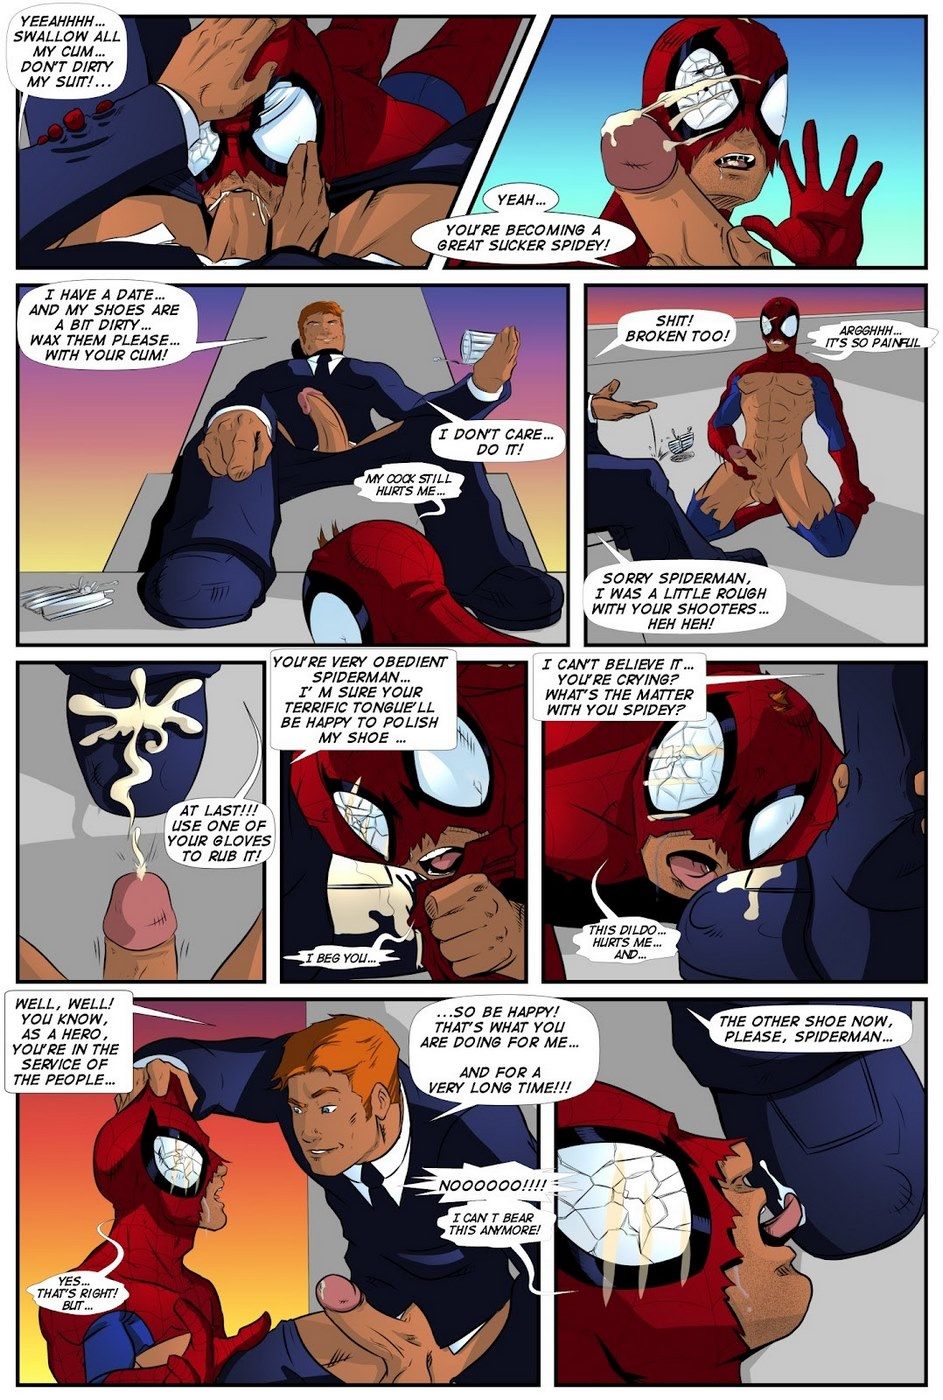 Shooters (Spider-Man Venom) page 17